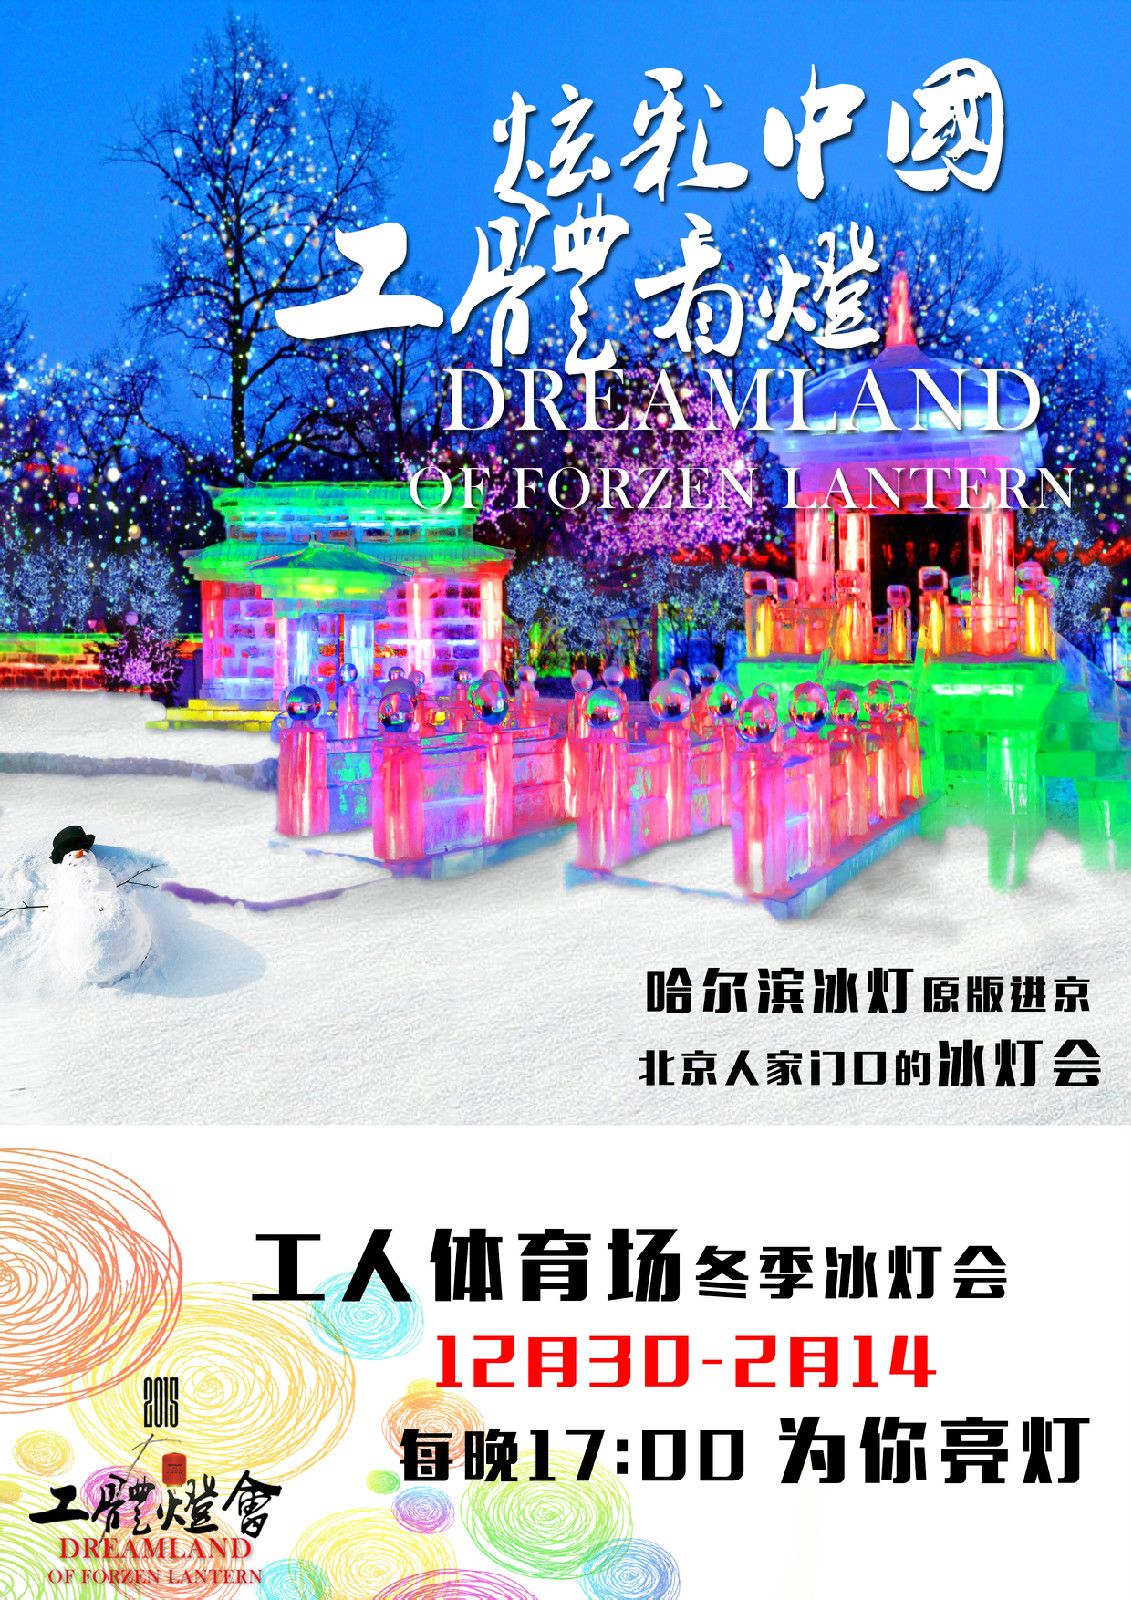 北京工人體育場冰燈遊園會